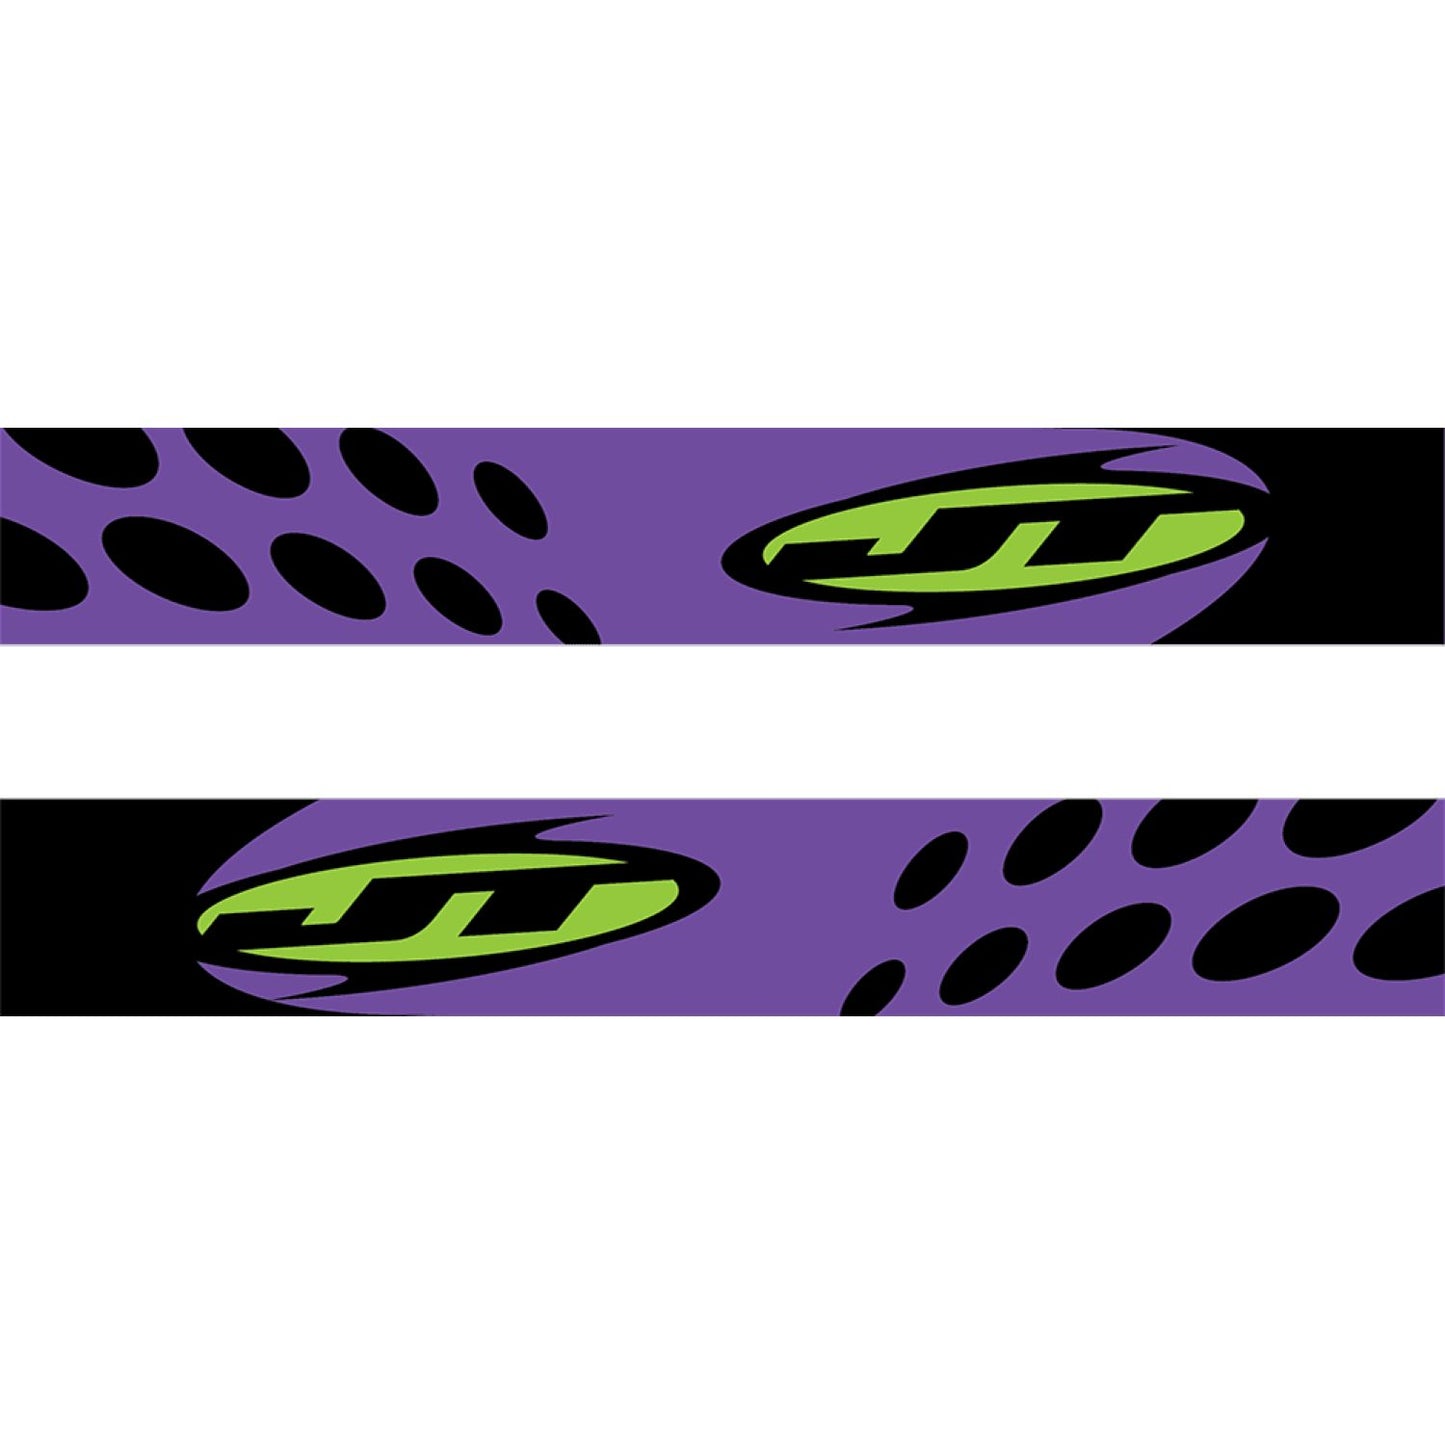 JT Purple/Lime Proflex Strap